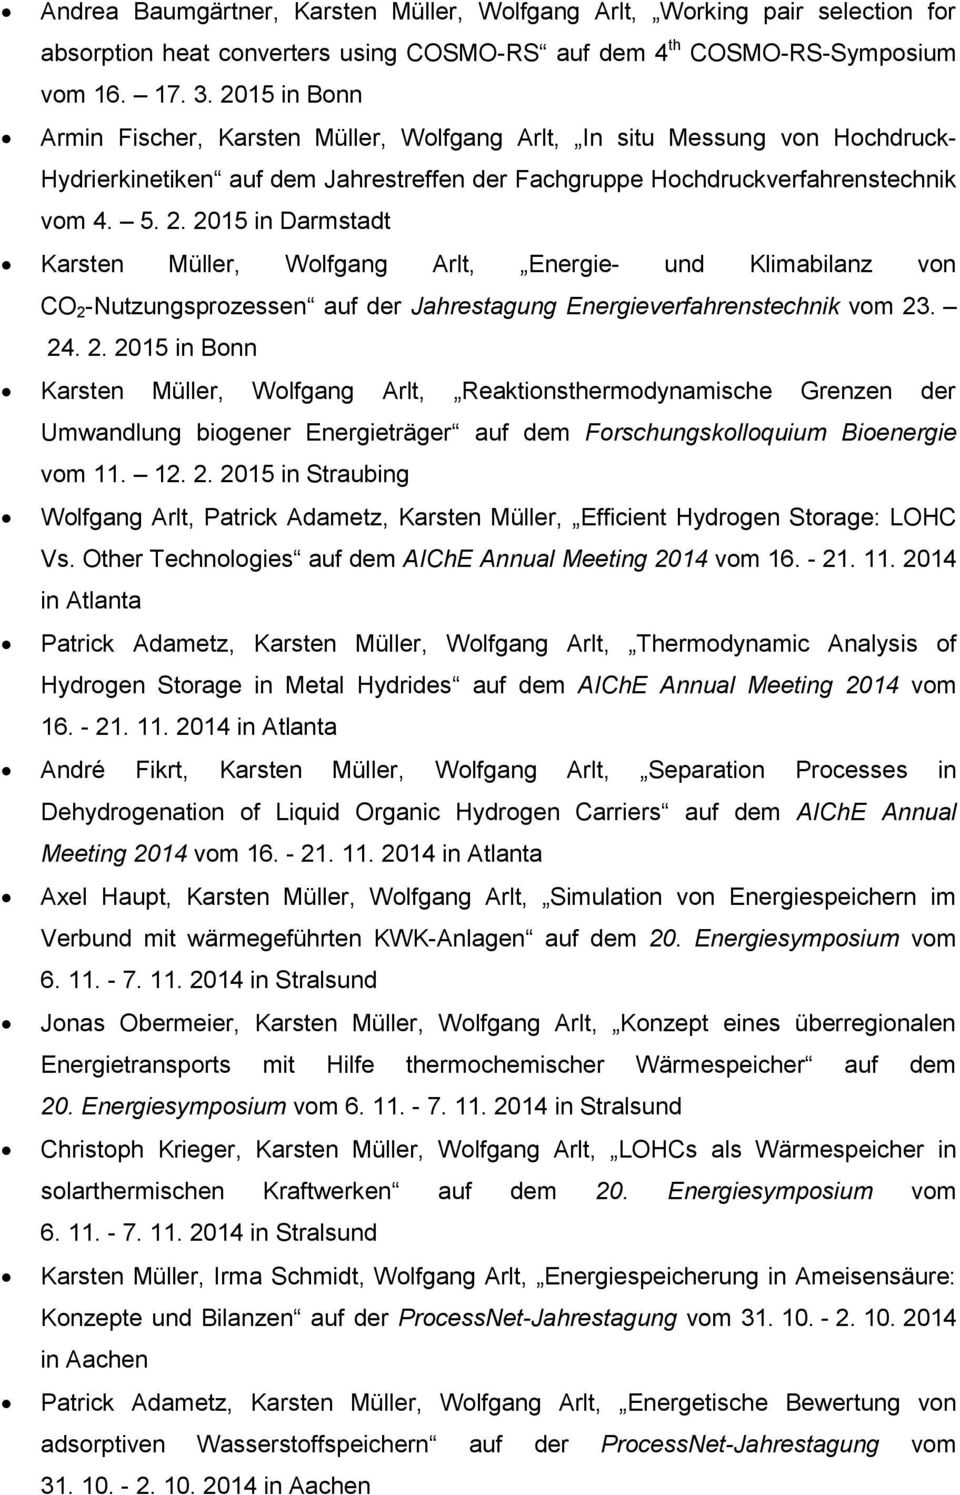 2015 in Darmstadt Karsten Müller, Wolfgang Arlt, Energie- und Klimabilanz von CO 2 